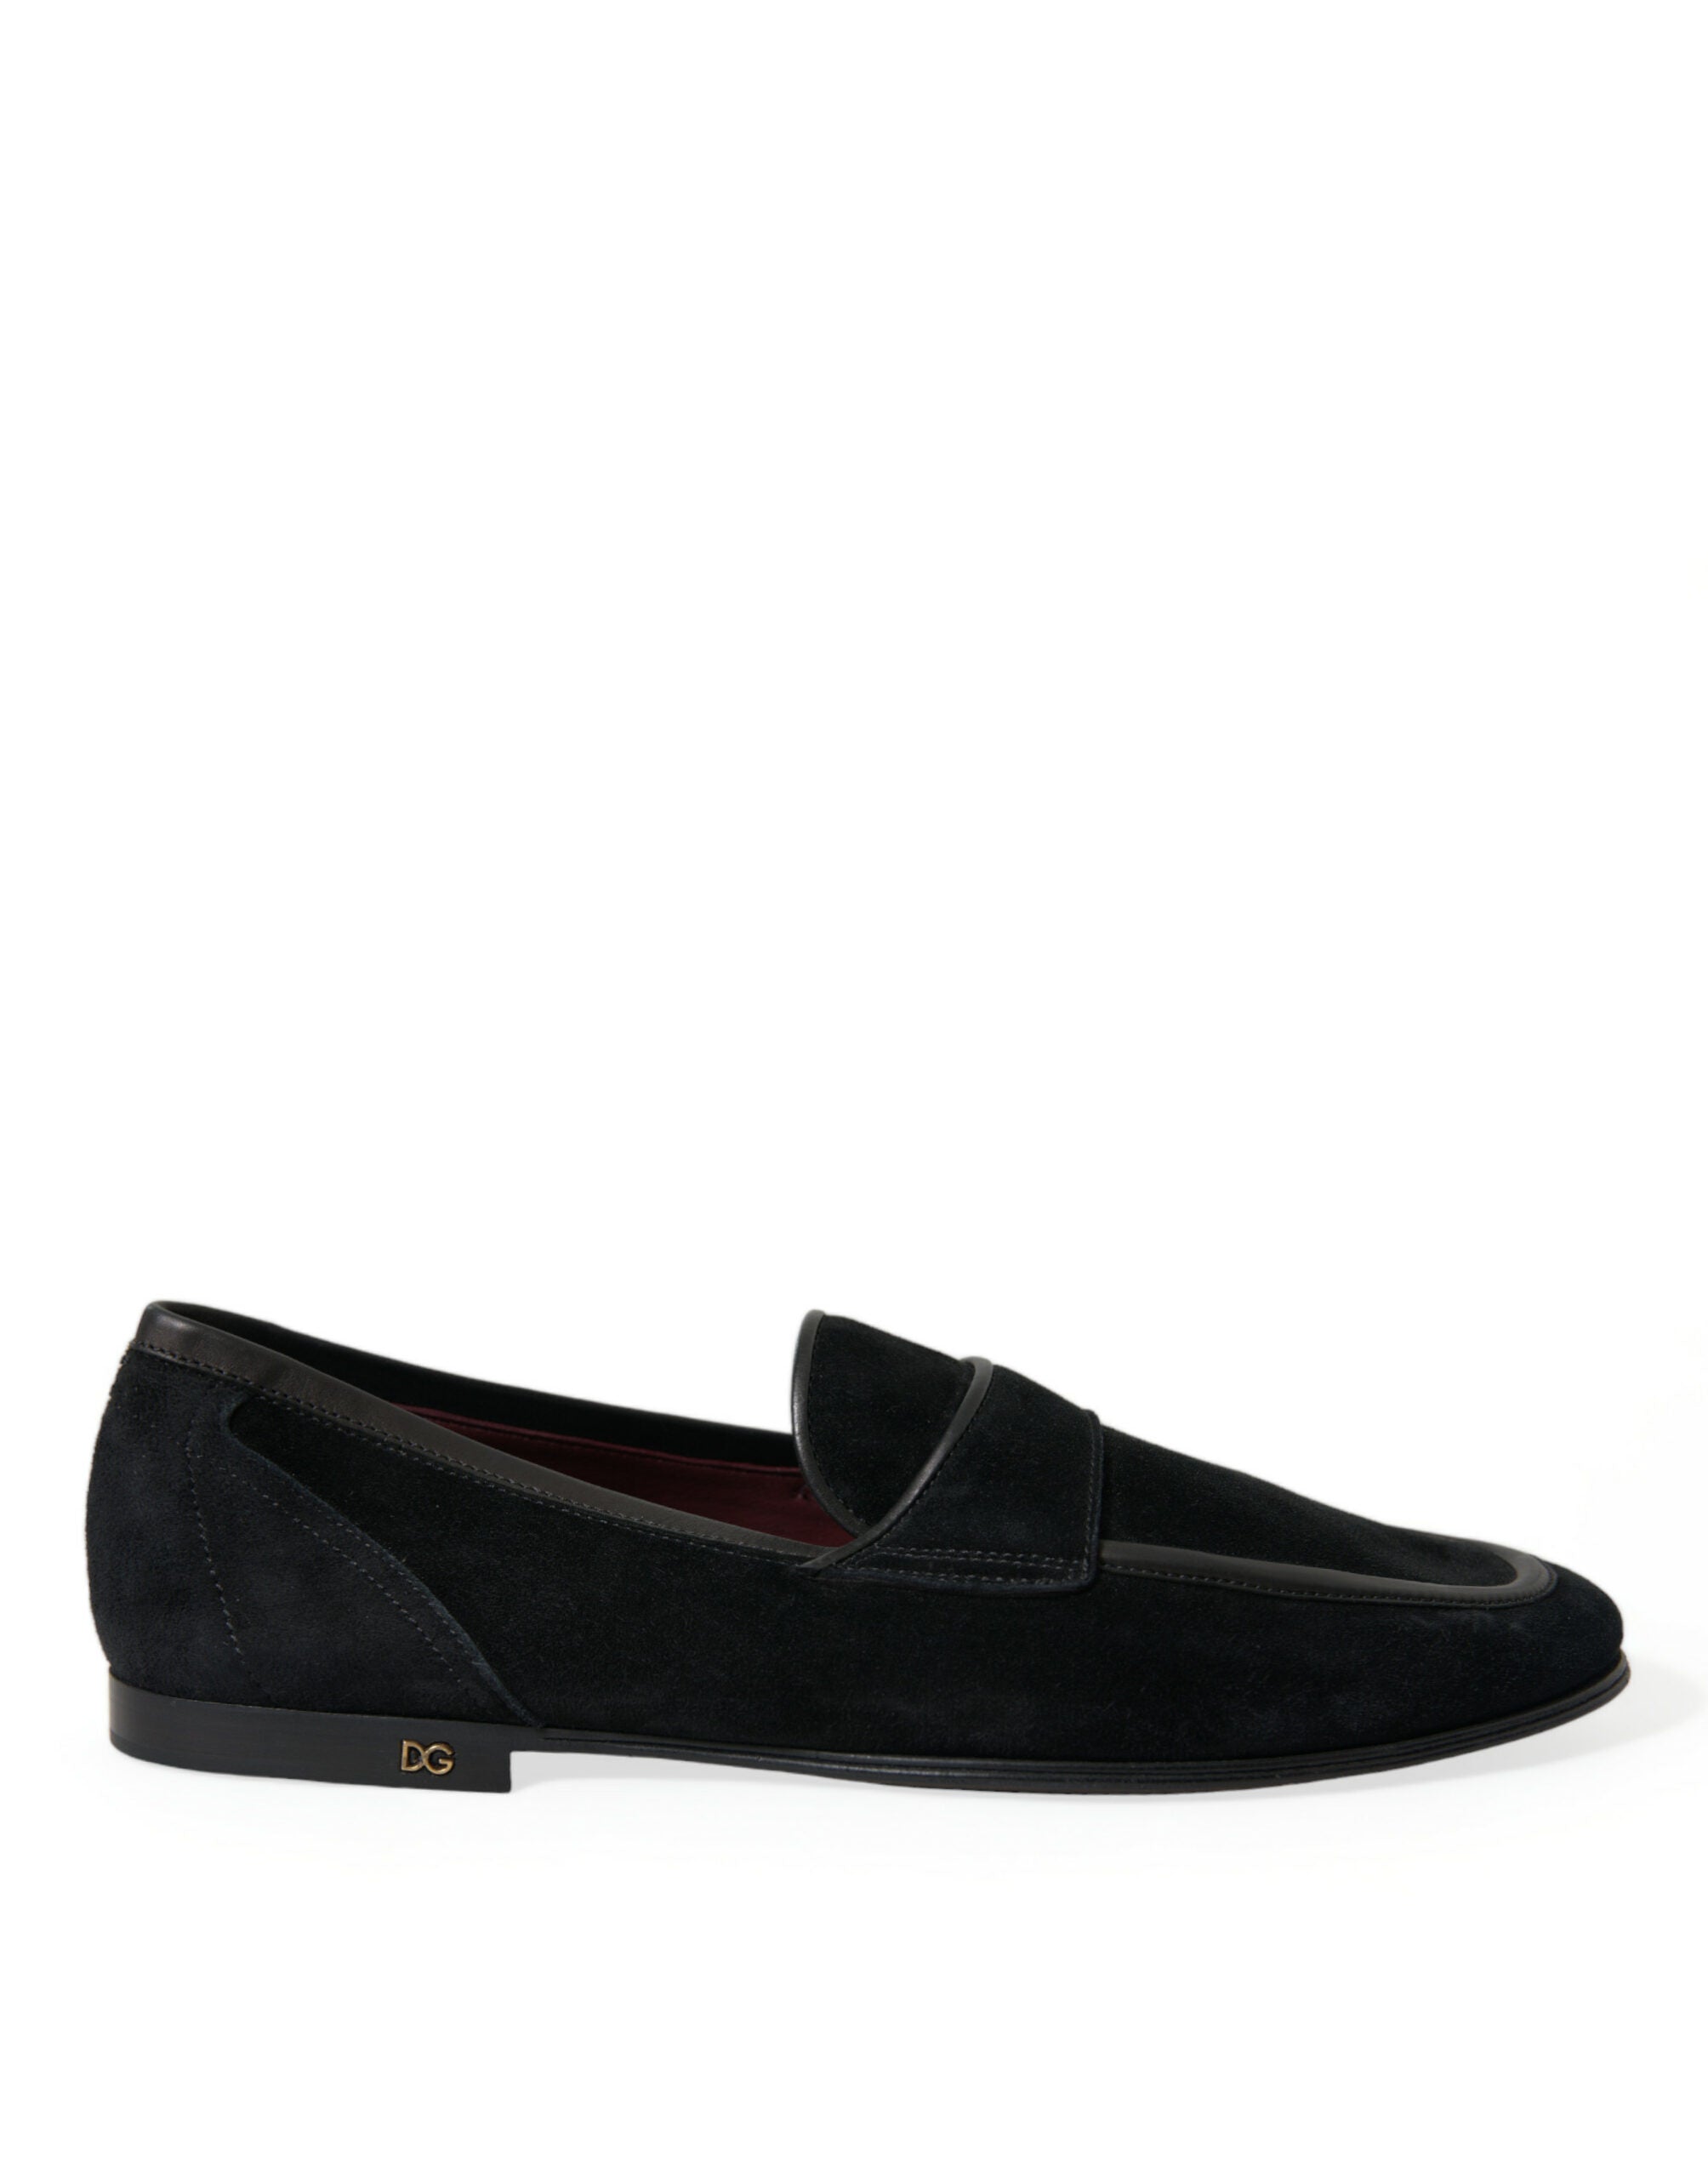 Elegant Velvet Black Loafers for Men - Divitiae Glamour